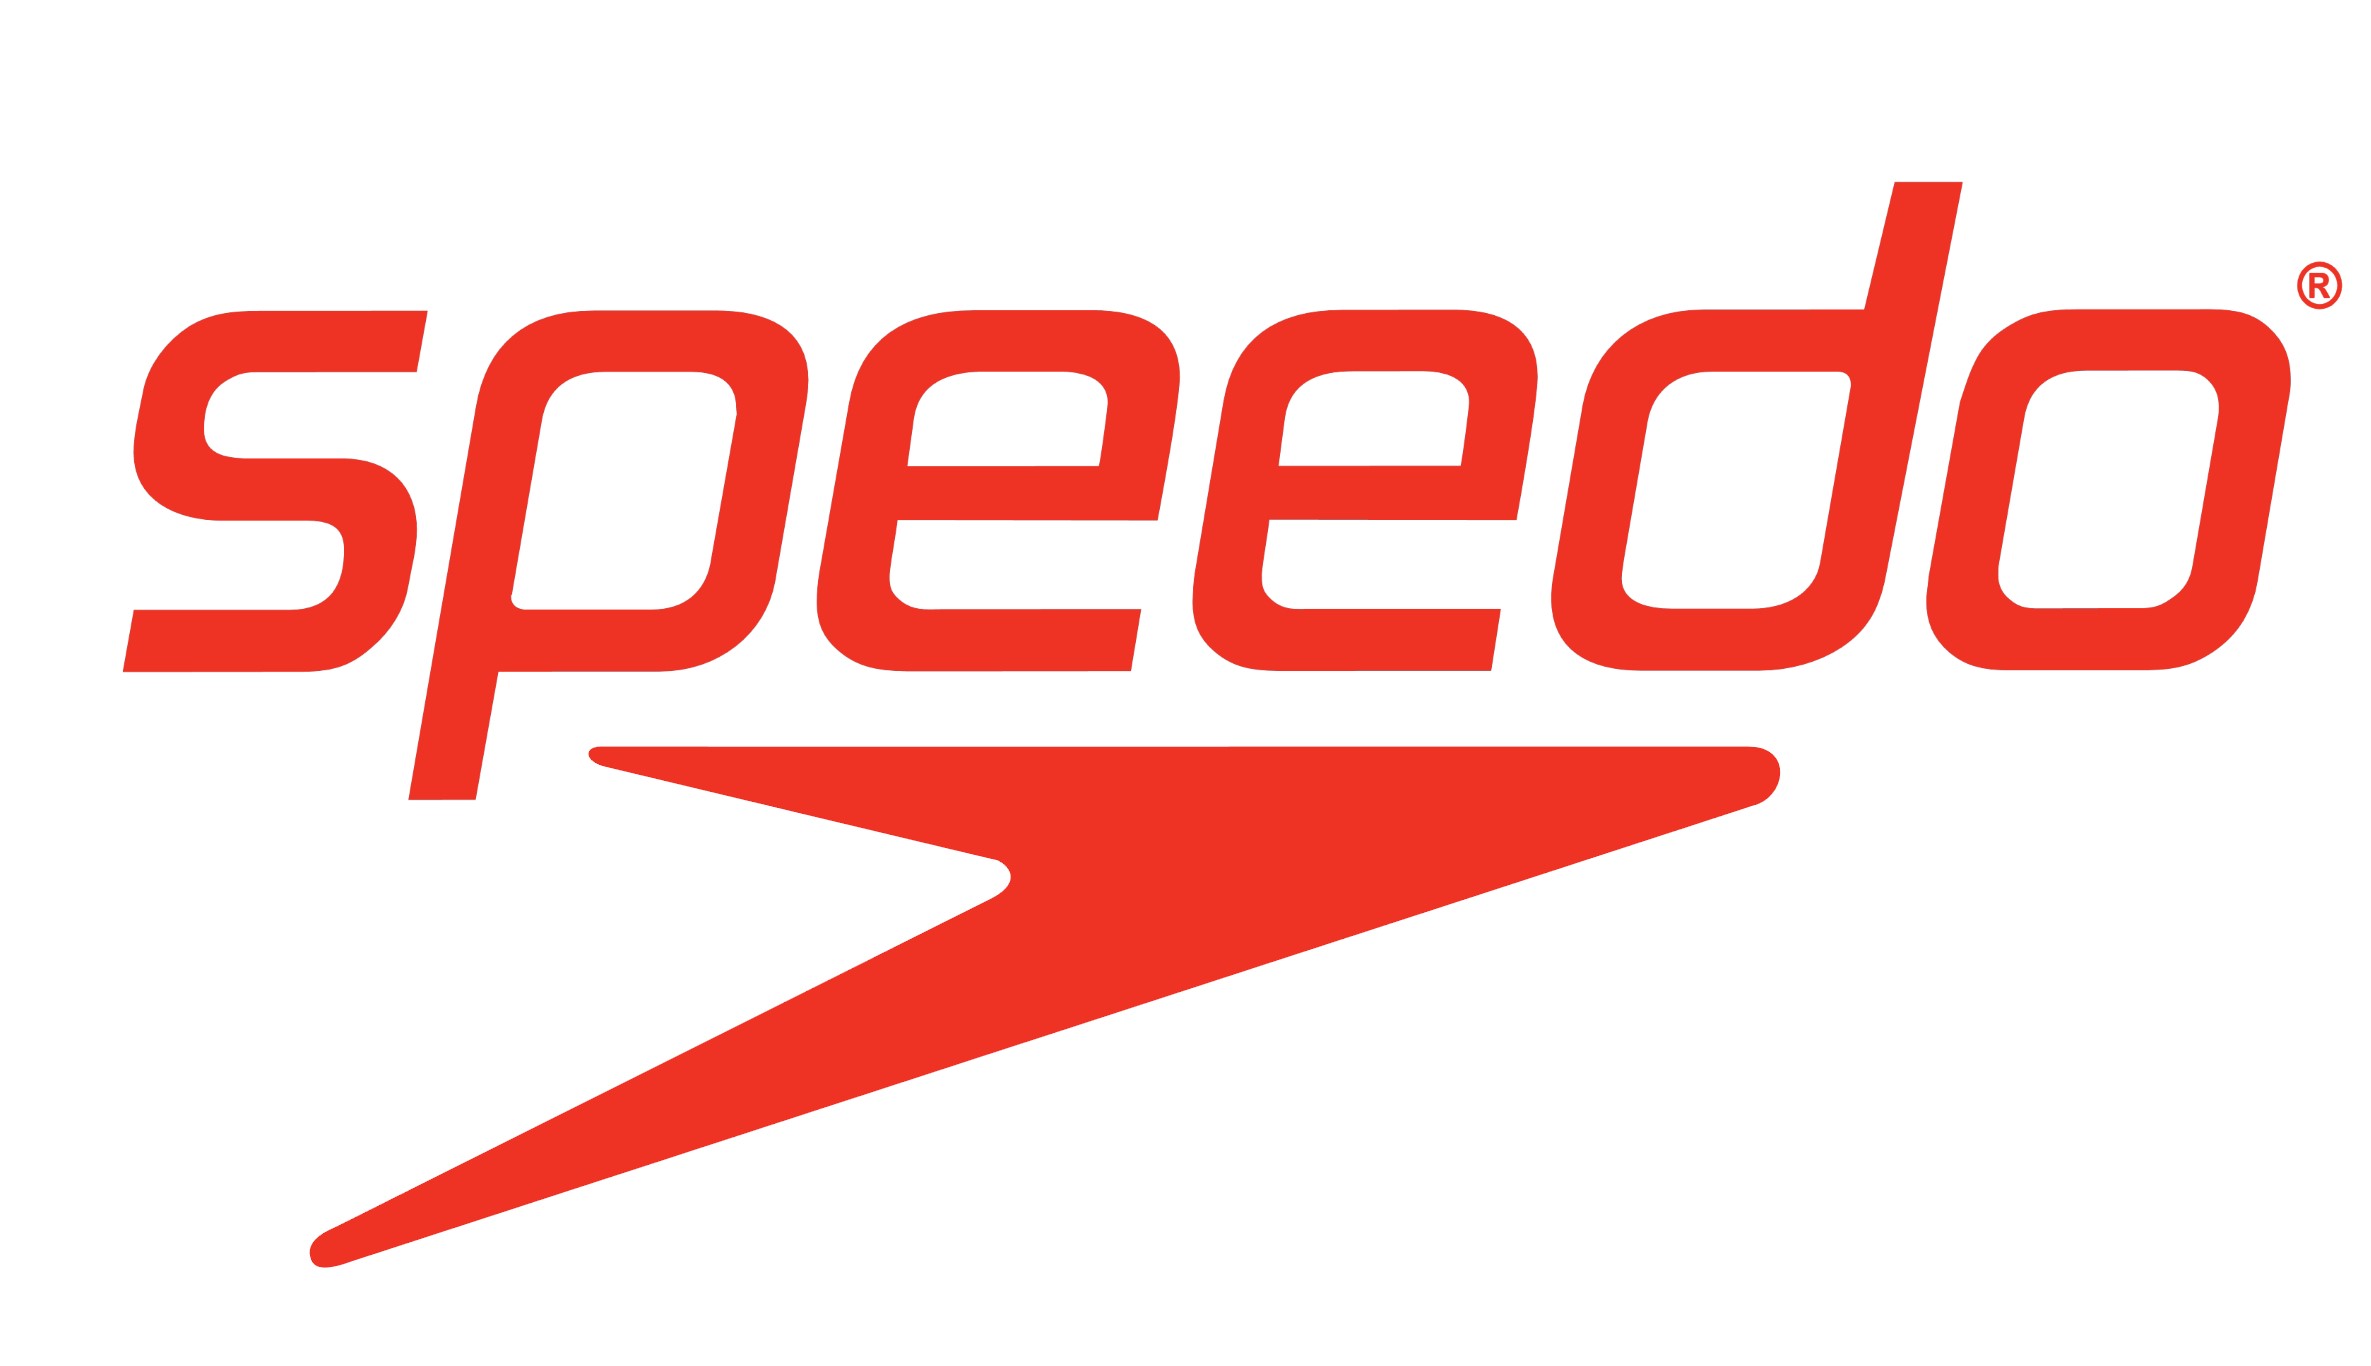 Speedo logo.jpg